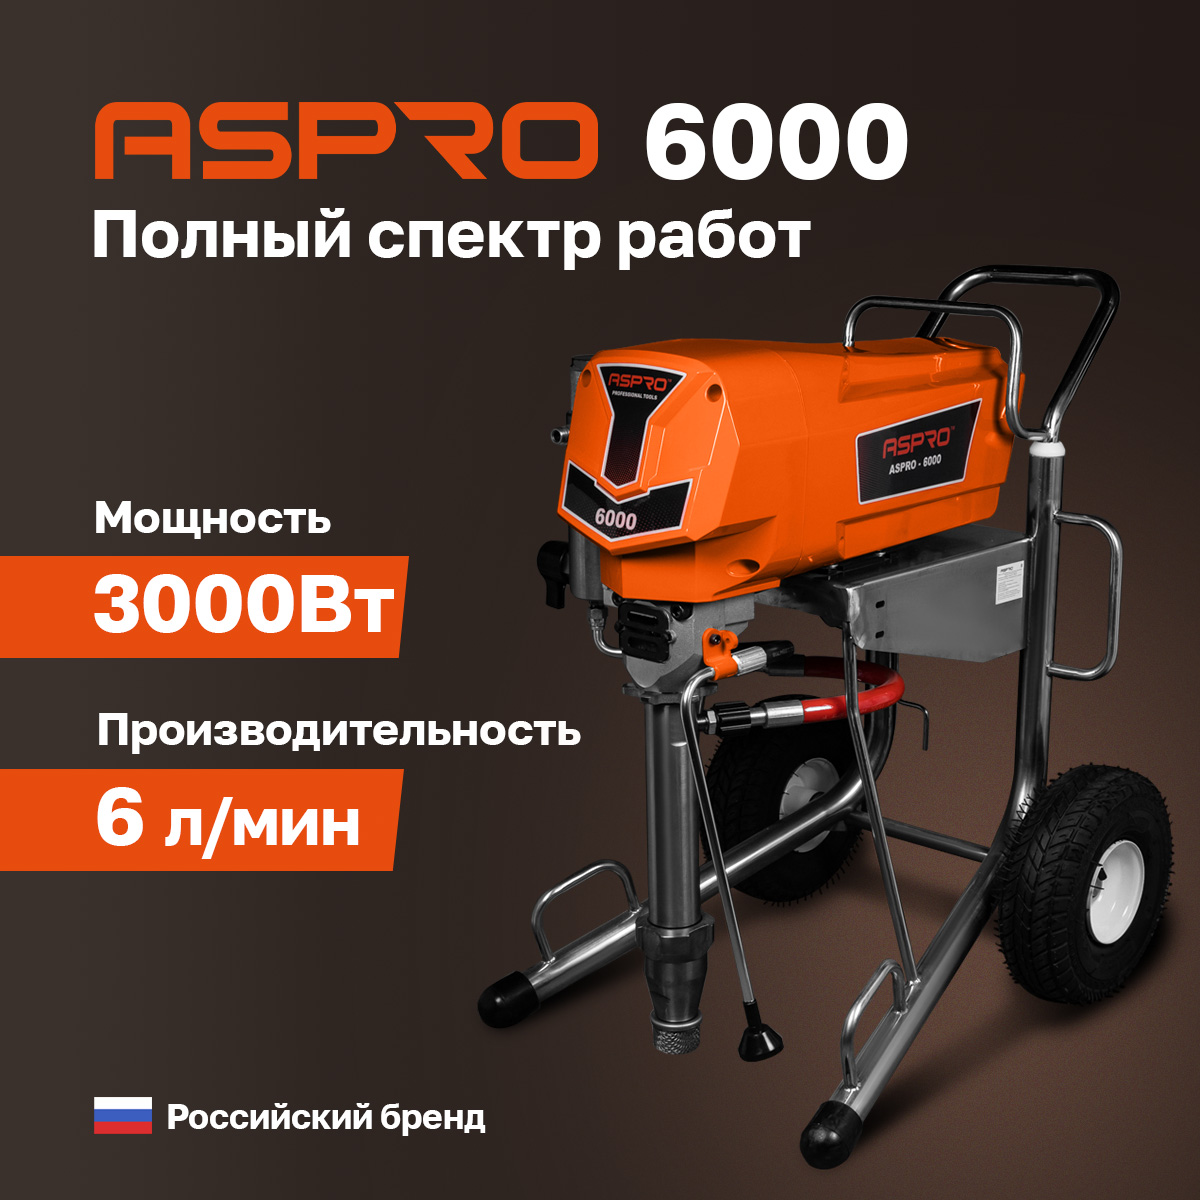 Окрасочный аппарат ASPRO-6000® окрасочный аппарат aspro